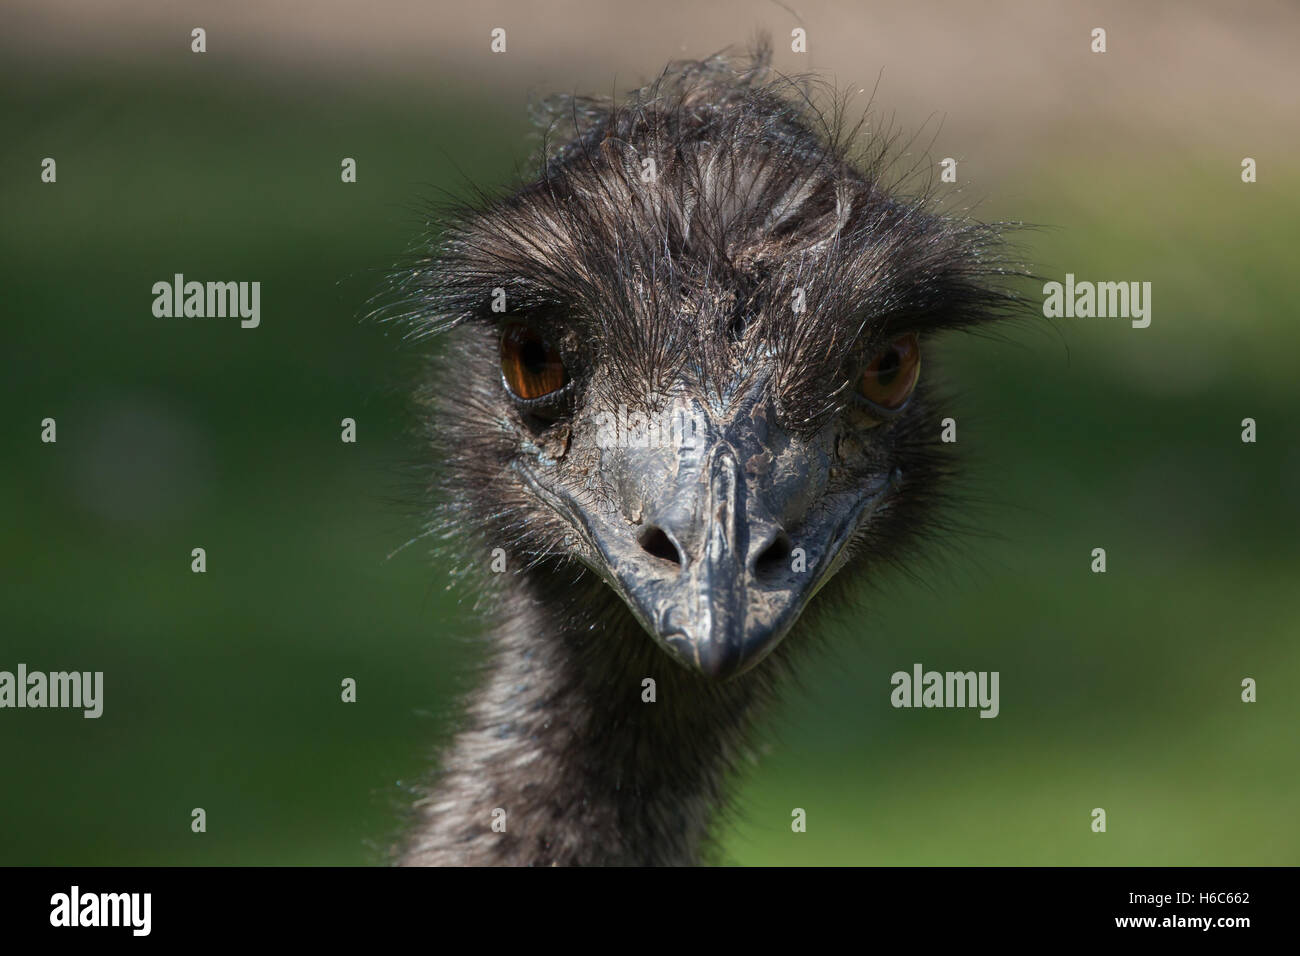 Emu (Dromaius novaehollandiae). Wildlife animal. Stock Photo